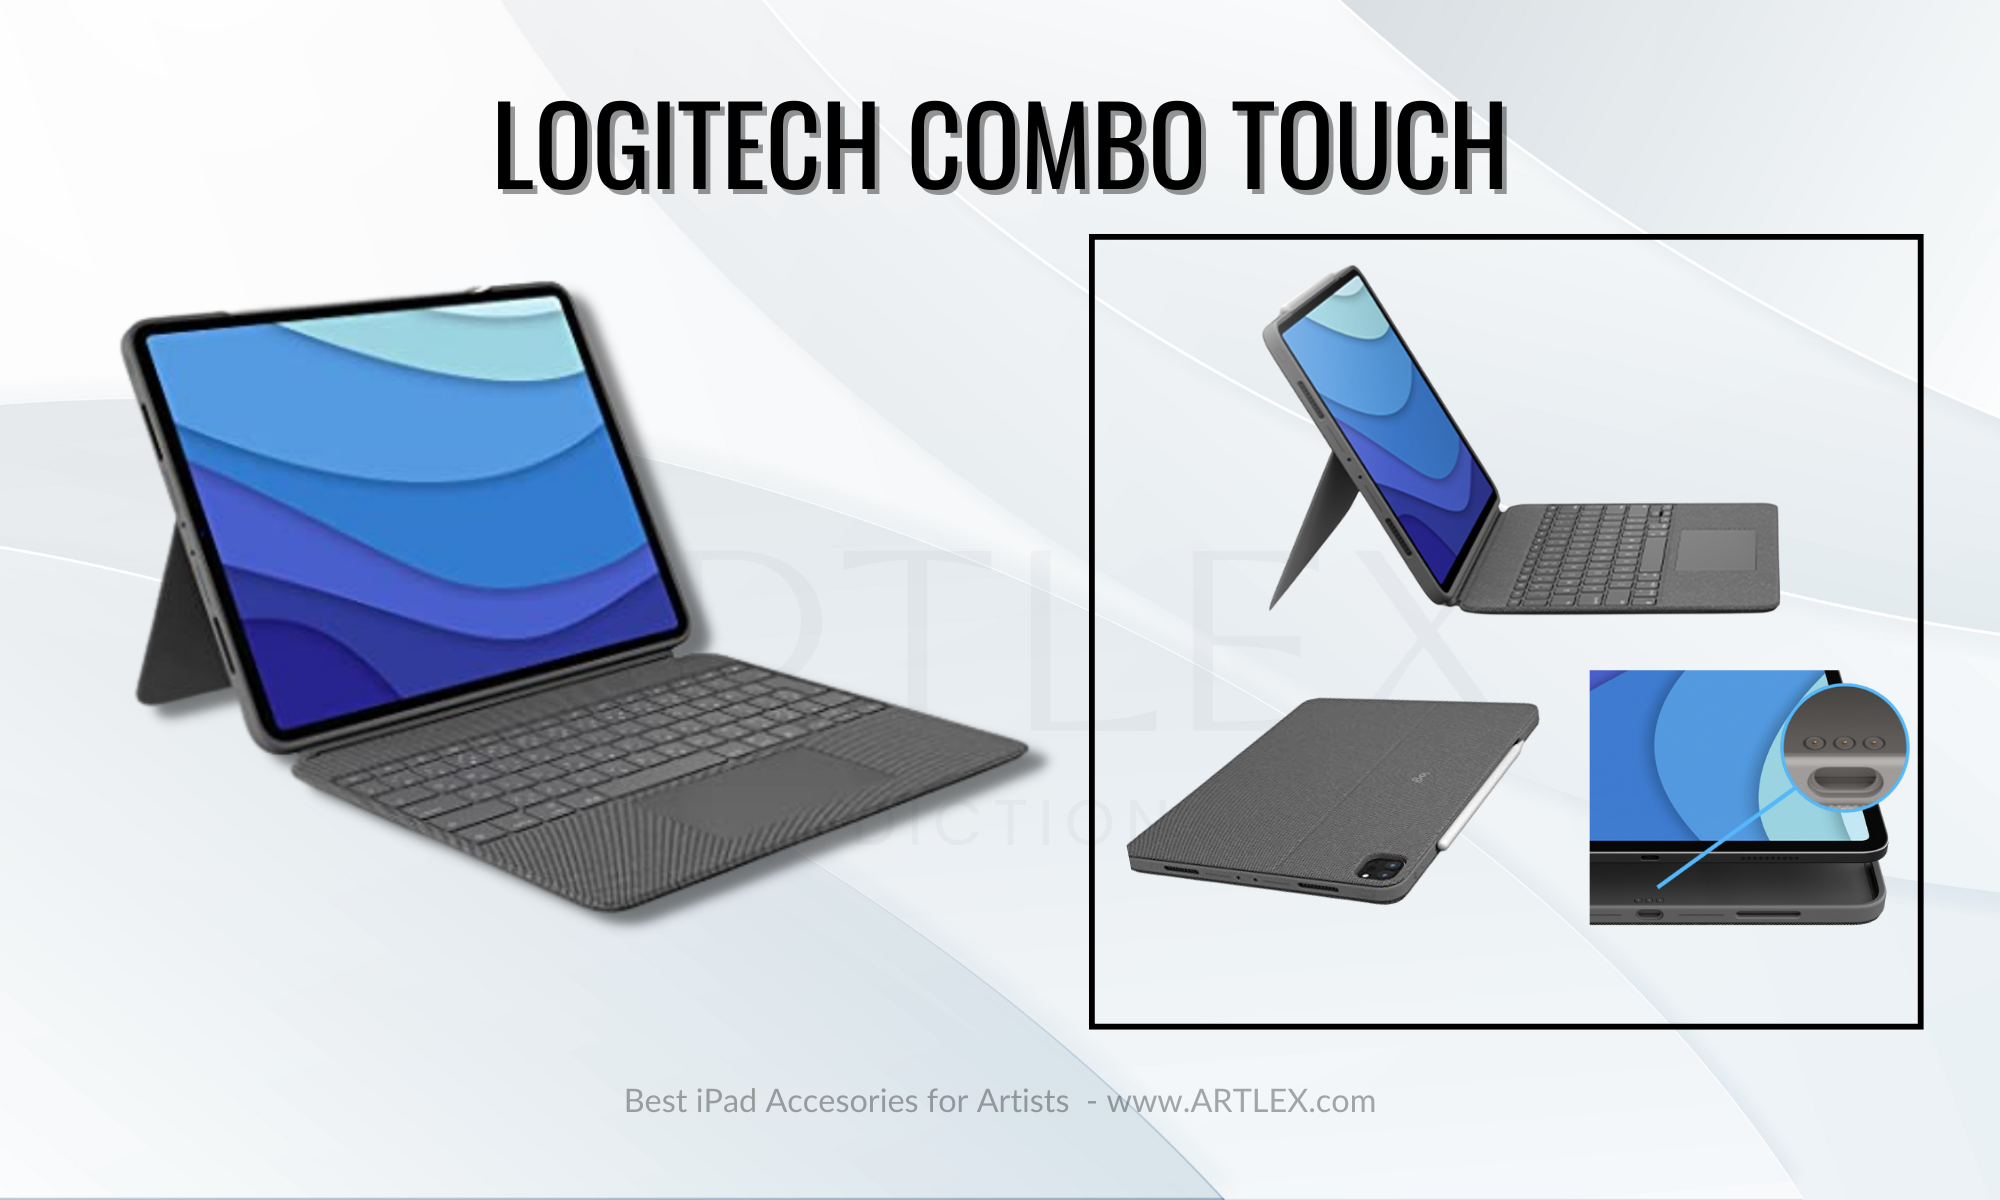 Meilleur clavier pour iPad - Logitech Combo Touch